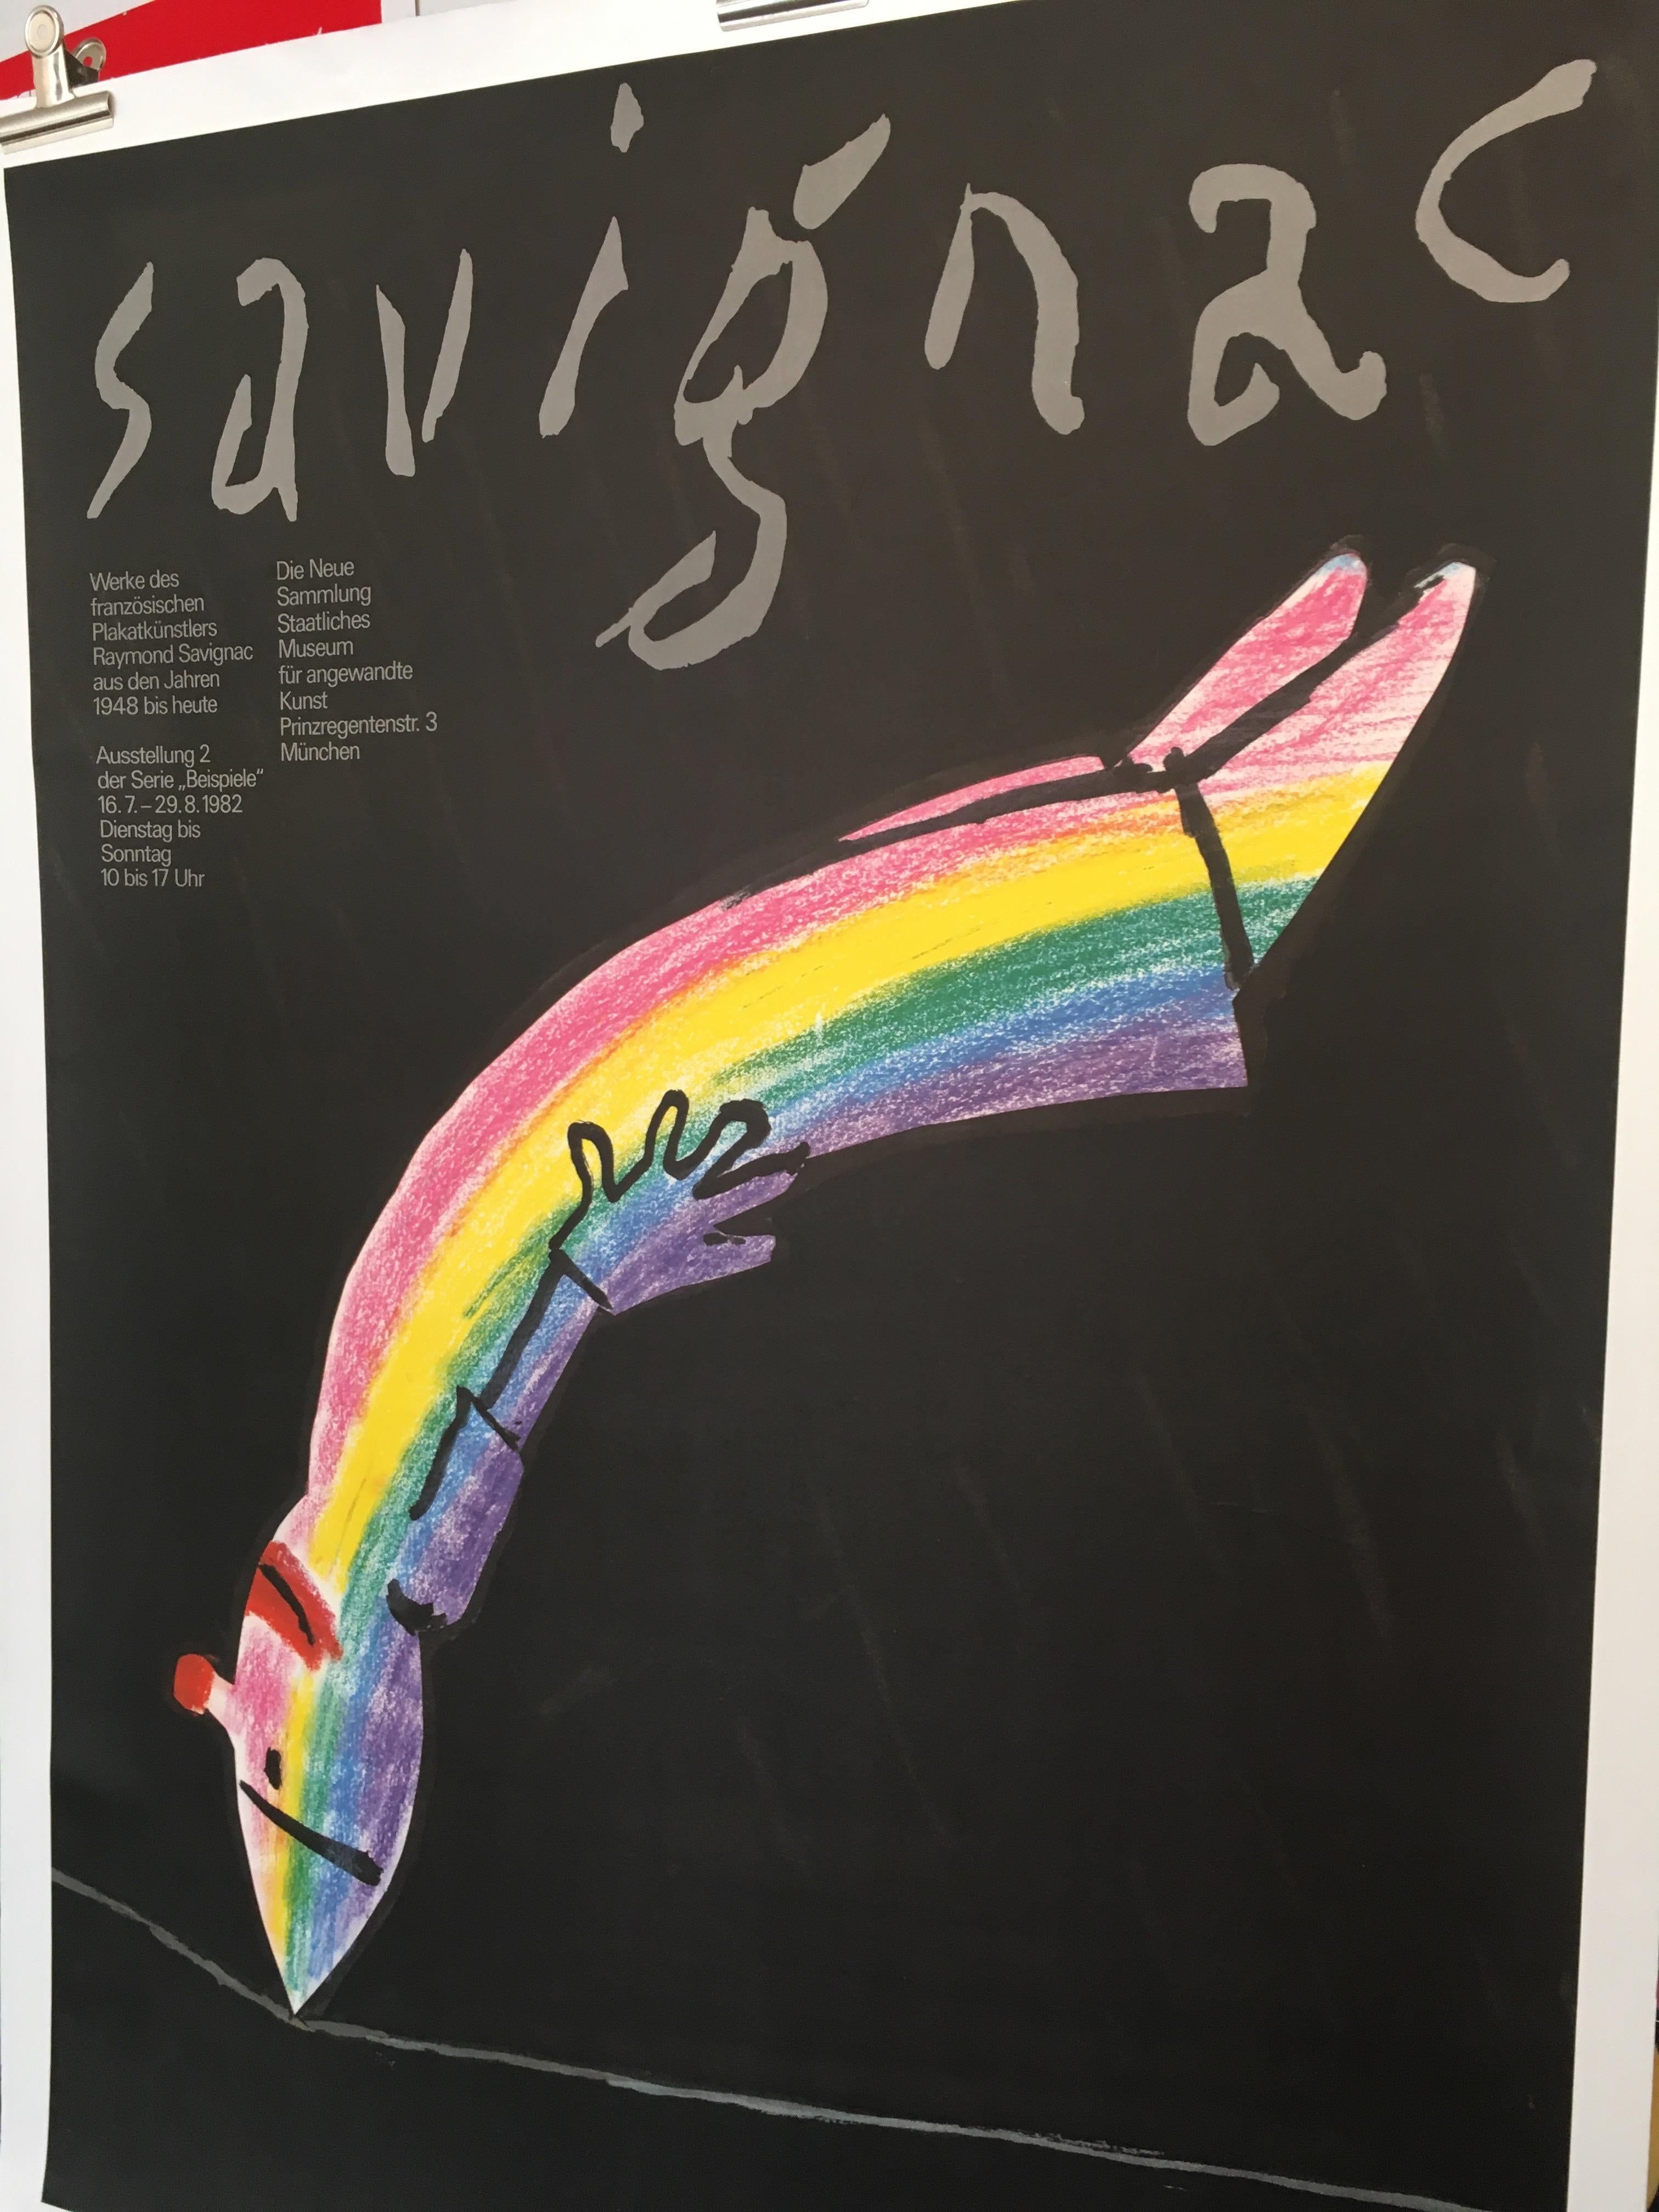 International Style Savignac Rainbow Exhibition Poster Munich Original Vintage Poster, 1982